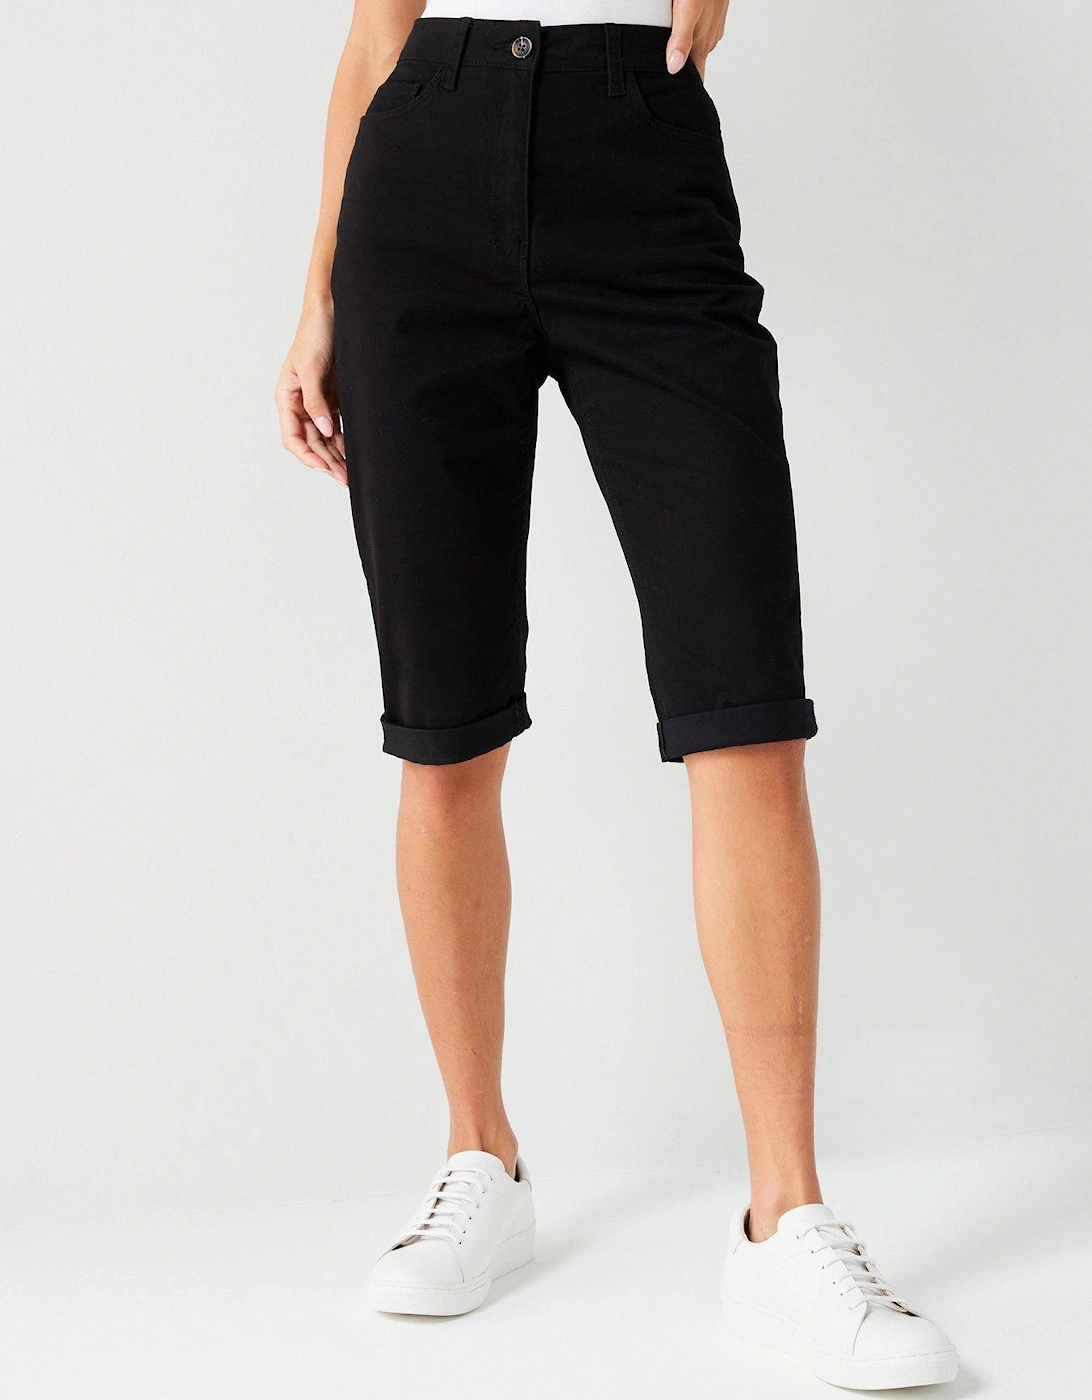 Sydney Stretch Shorts - Black, 2 of 1